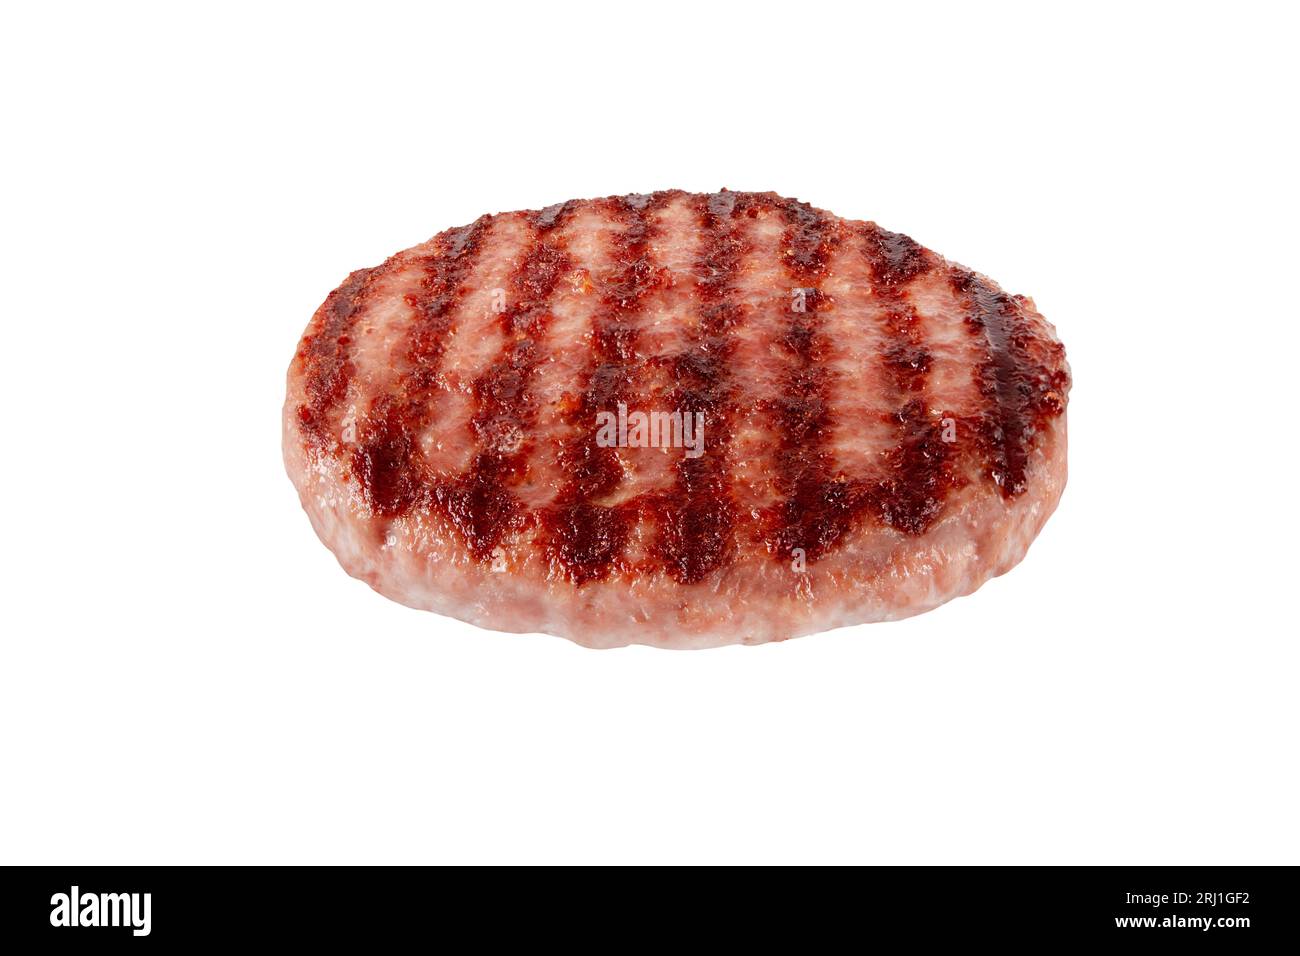 Hackfleischpatty oder Burger mit geschwärzten Grillspuren isoliert auf weiß. Hamburger Zutat. Stockfoto